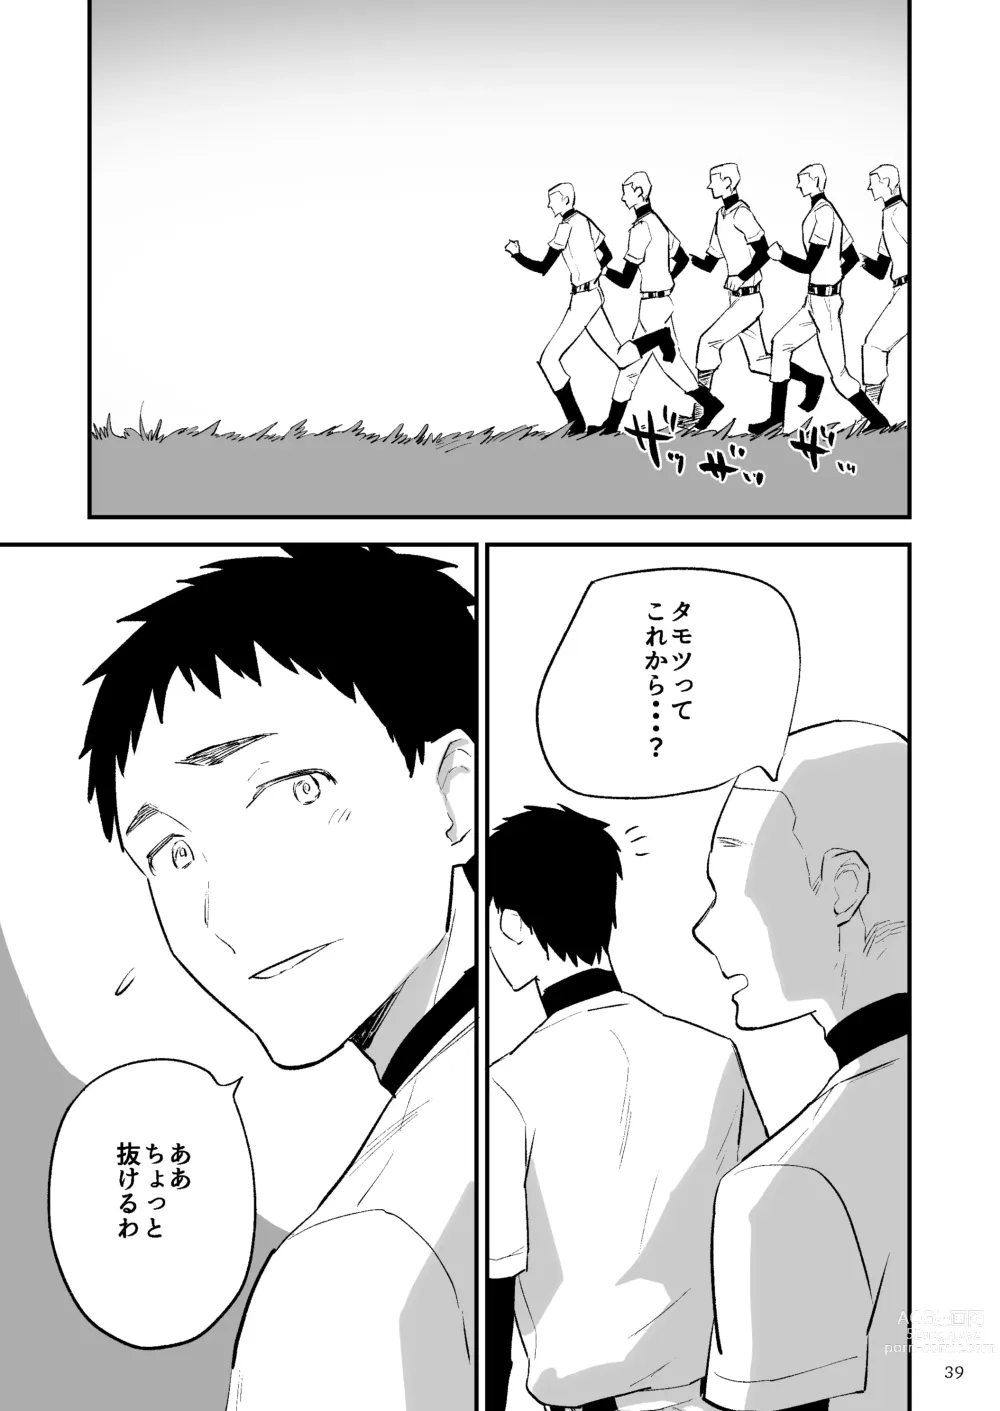 Page 40 of doujinshi Gakuen o shihai suru juyoku dai 2 wa